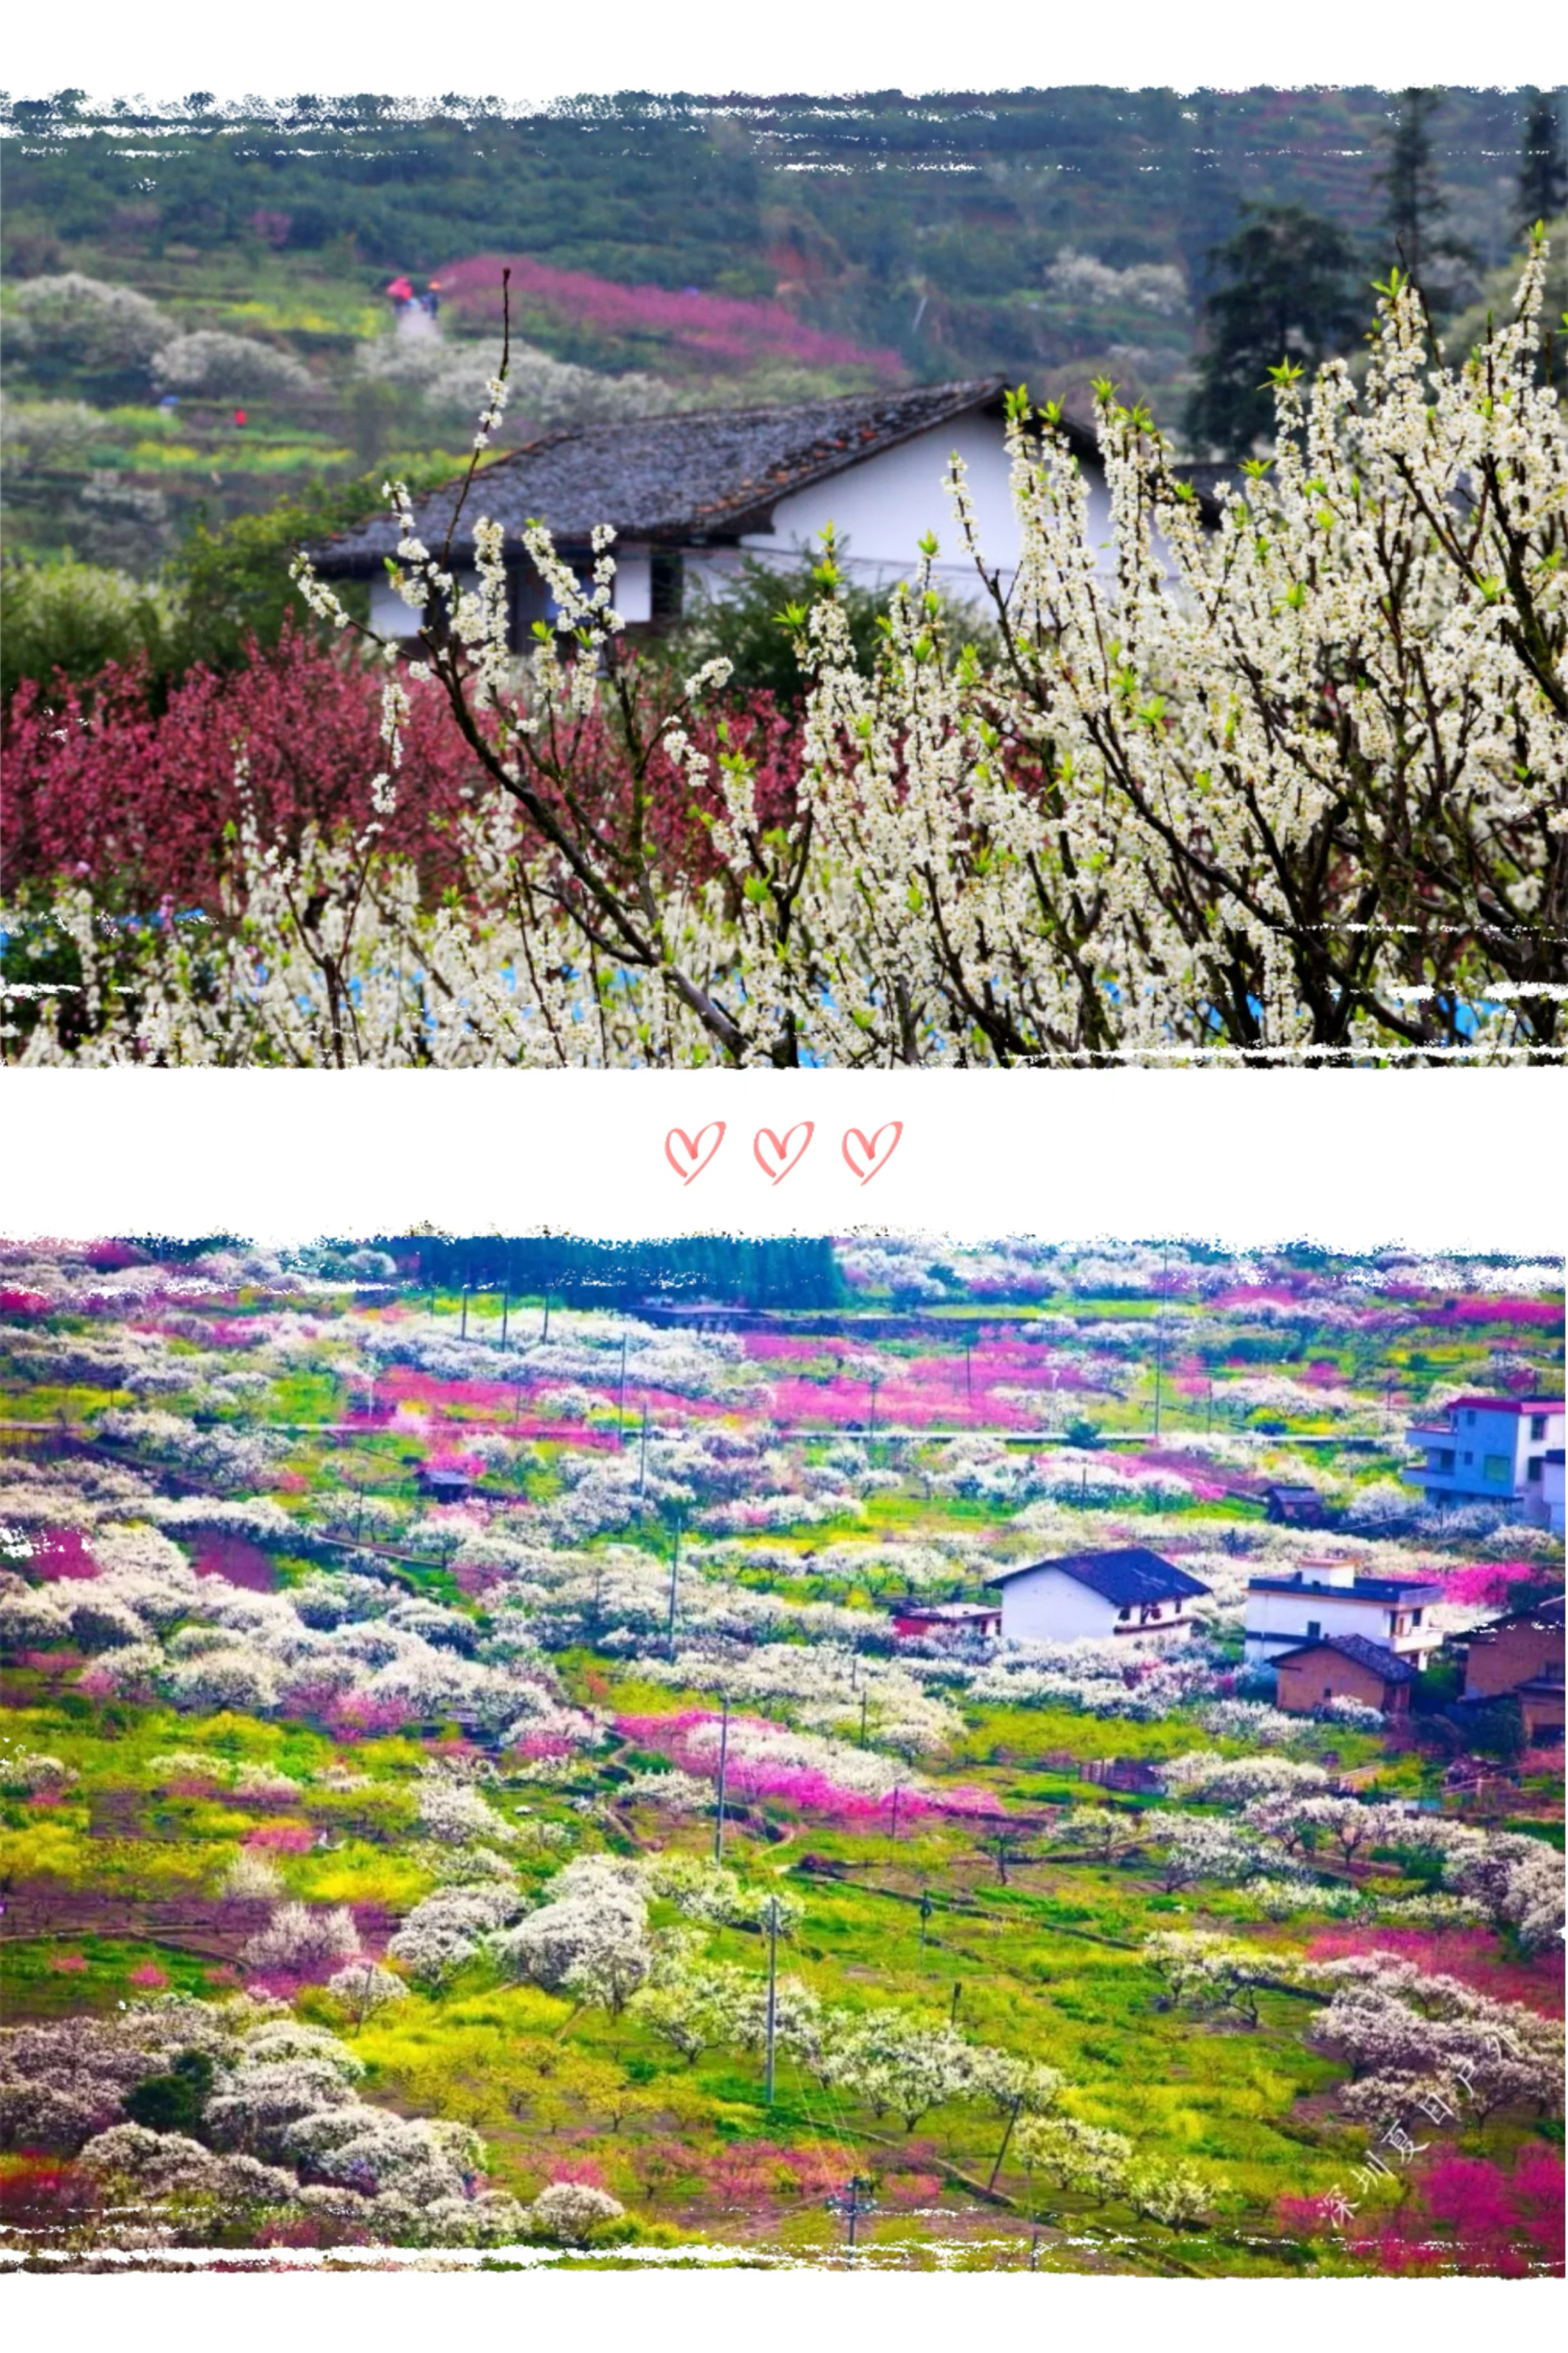 春意如丝，这里的桃花梨花油菜花，开满山间溪边和屋前